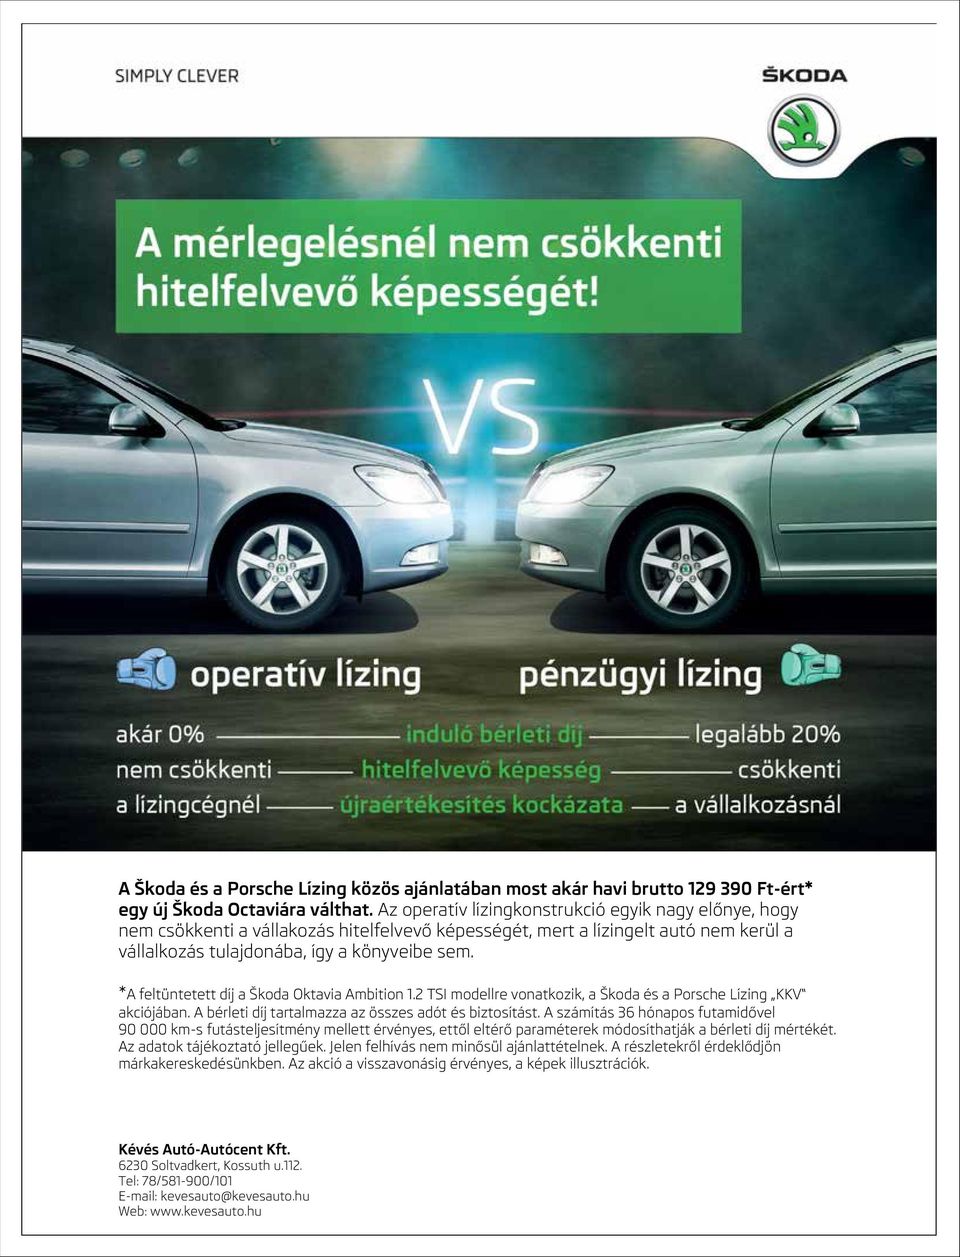 *A feltüntetett díj a Škoda Oktavia Ambition 1.2 TSI modellre vonatkozik, a Škoda és a Porsche Lízing KKV akciójában. A bérleti díj tartalmazza az összes adót és biztosítást.